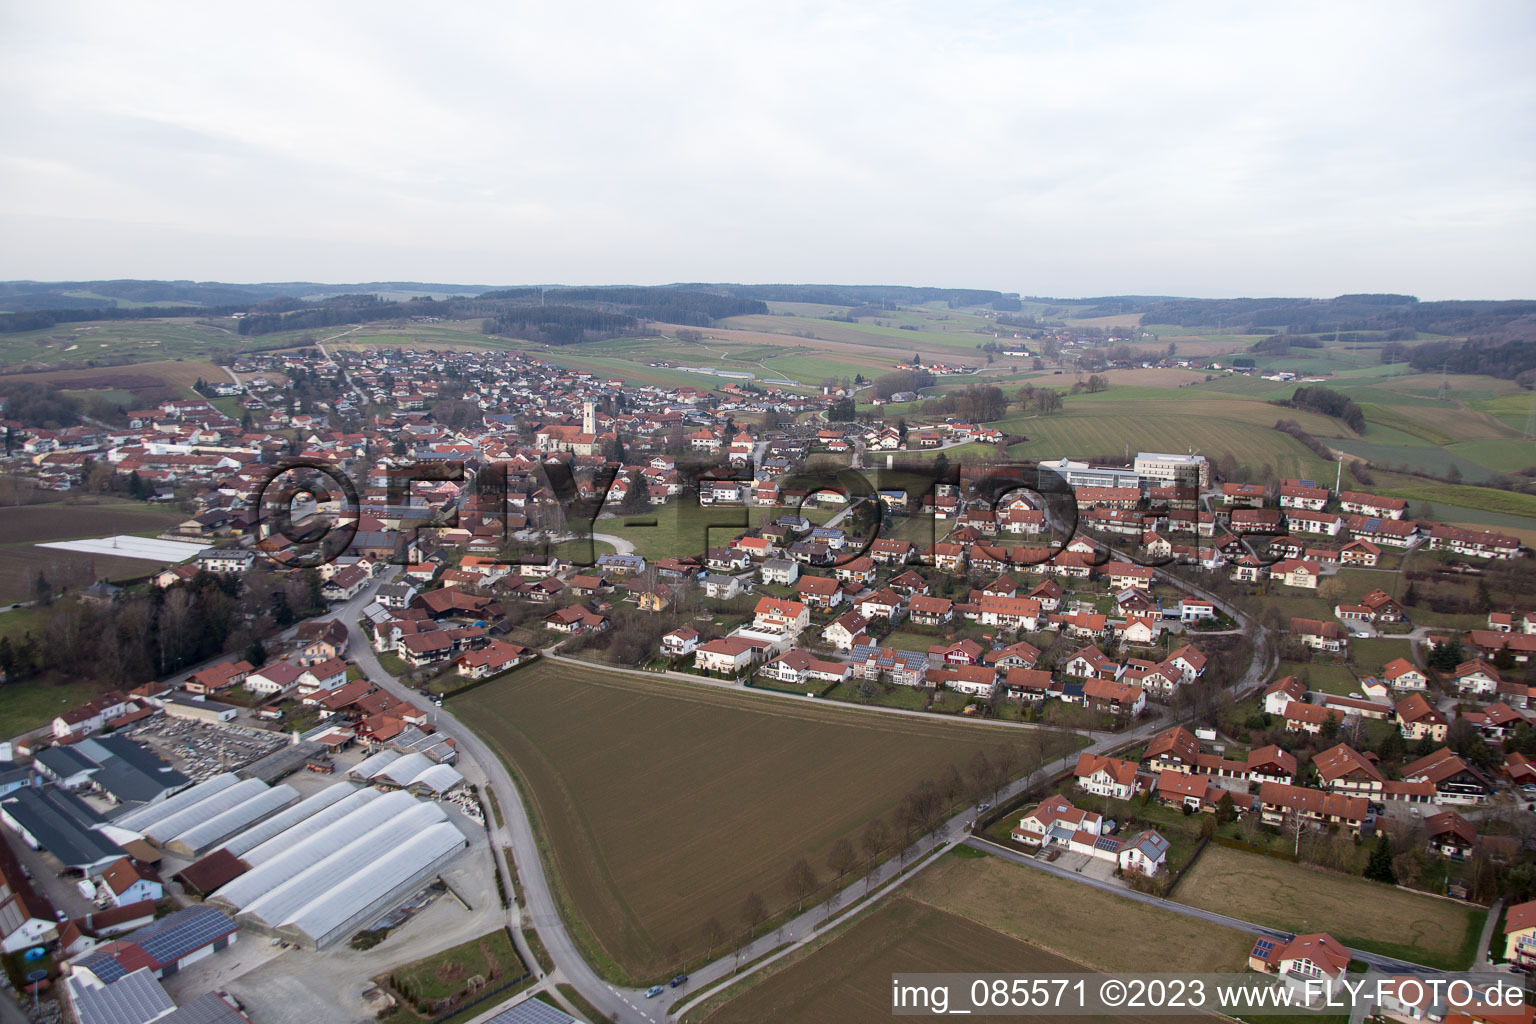 Bad Birnbach im Bundesland Bayern, Deutschland aus der Luft betrachtet